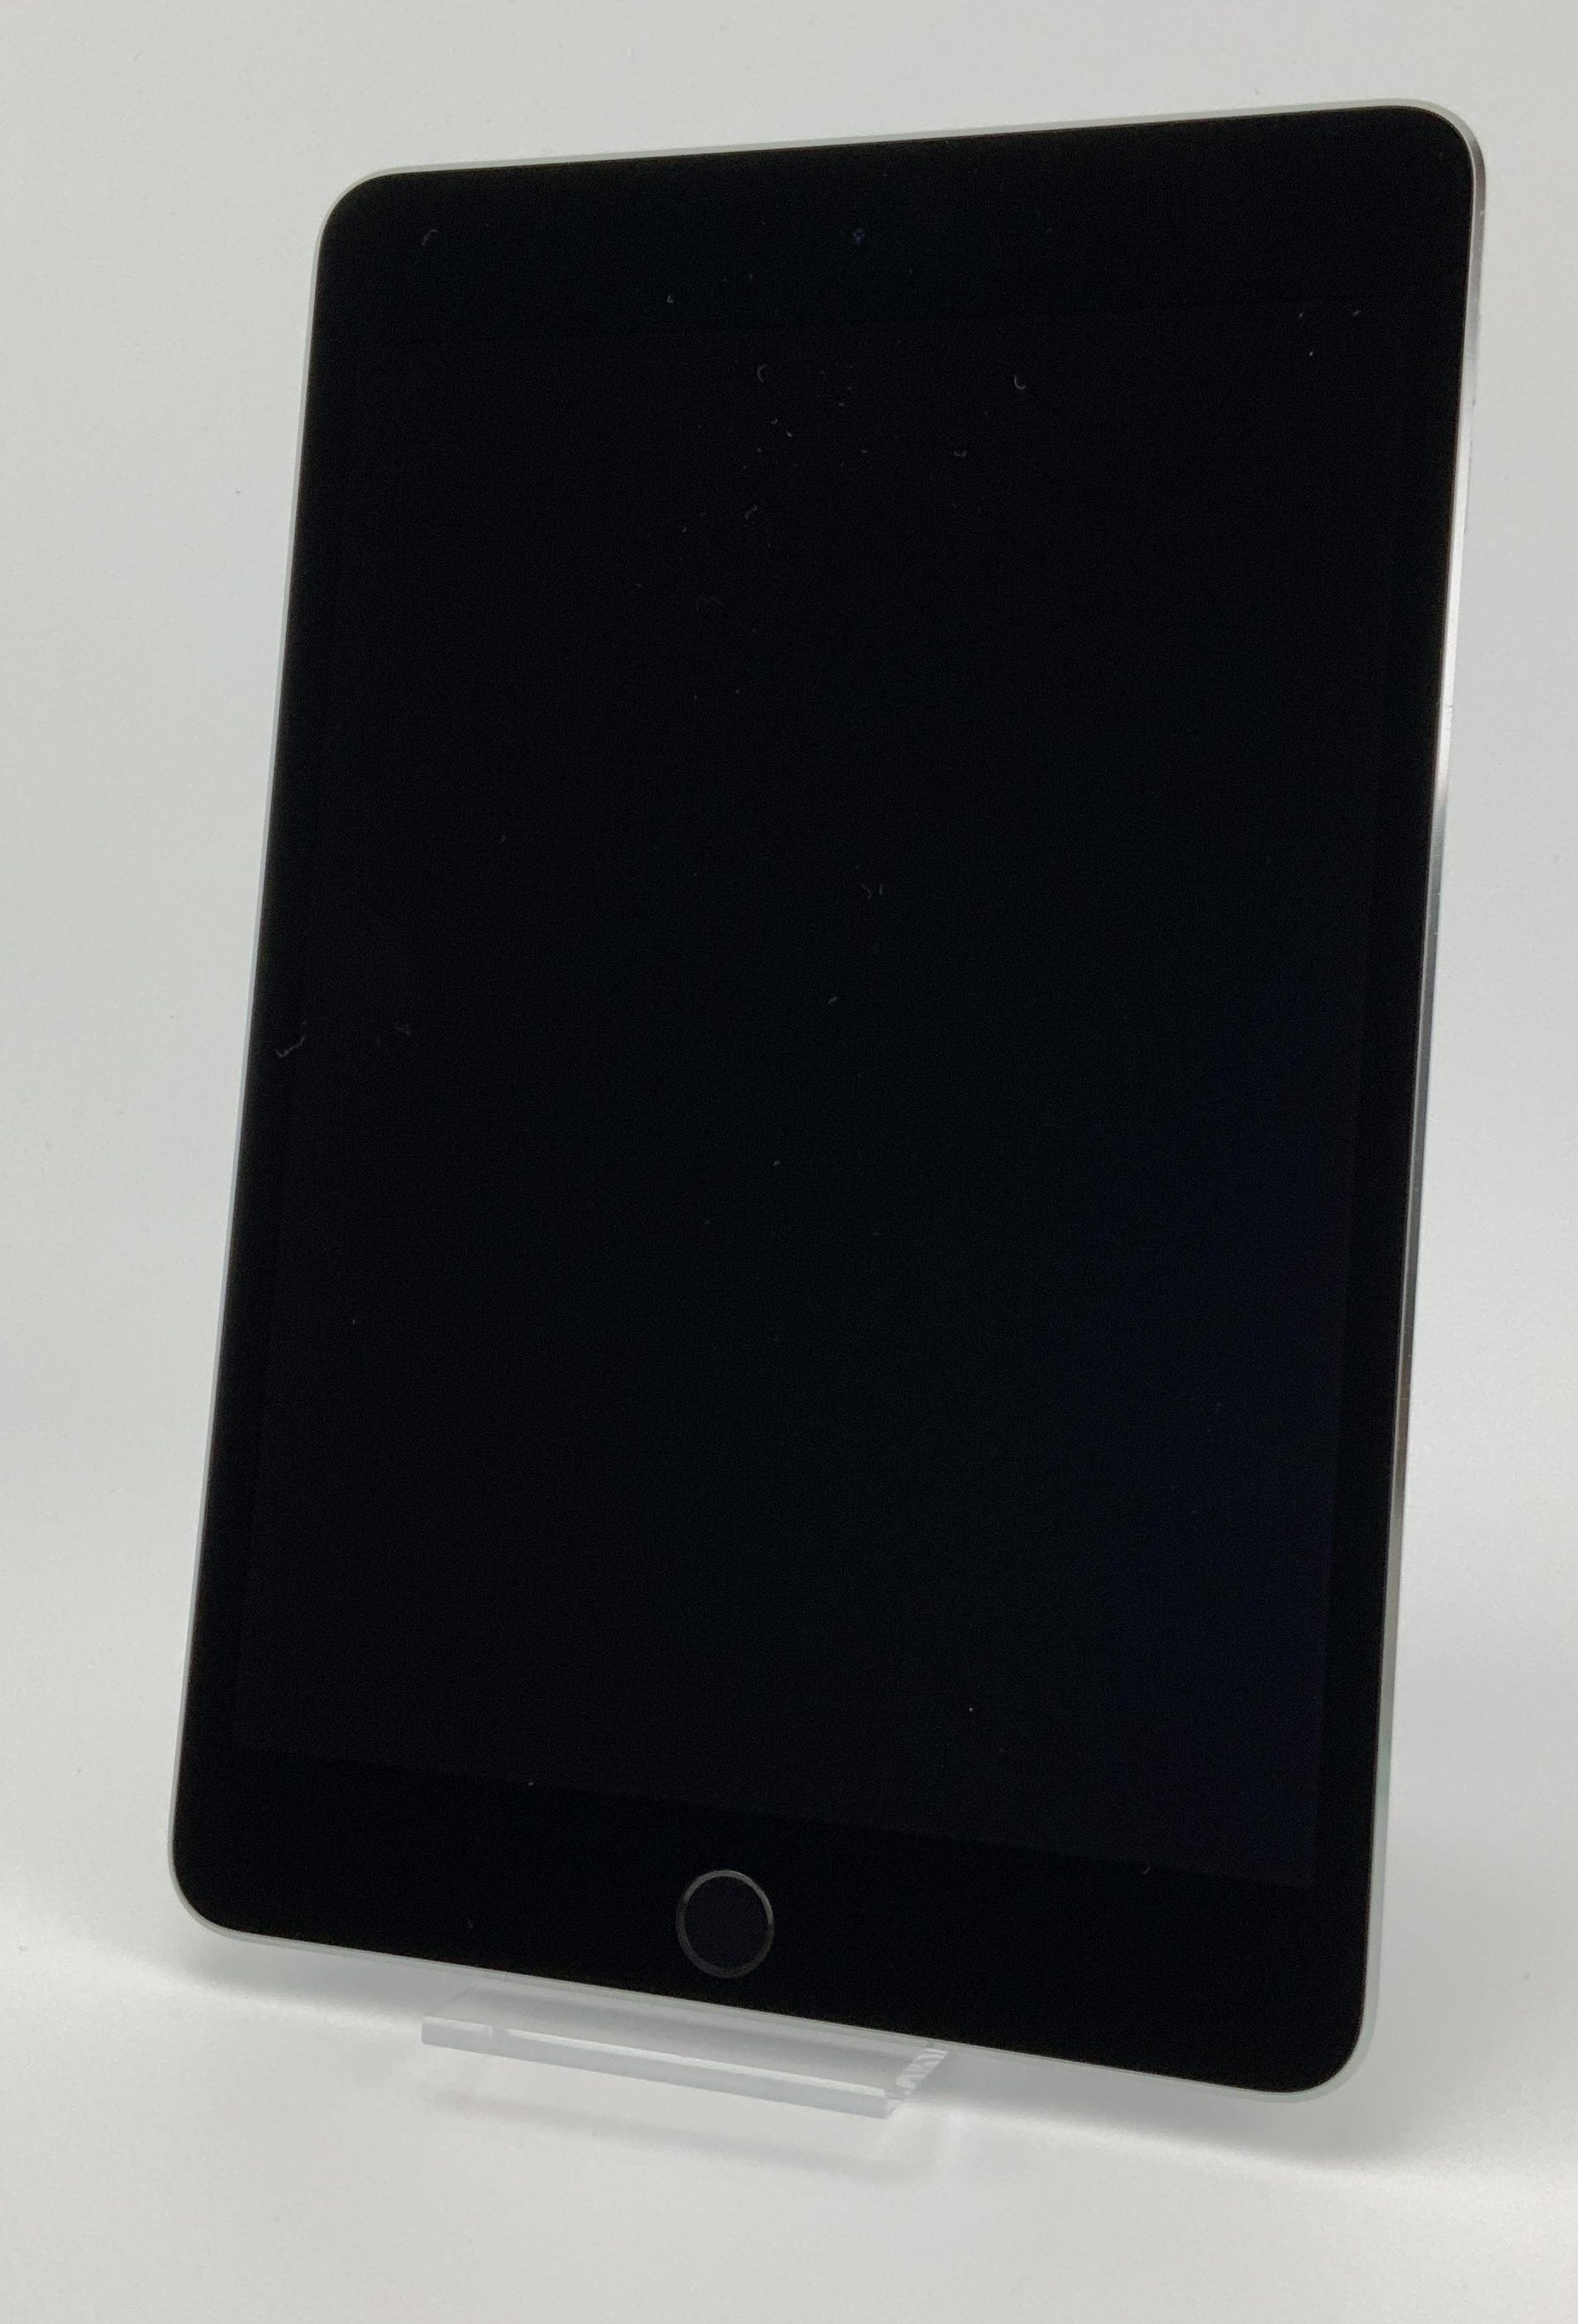 iPad mini 4 Wi-Fi 128GB, 128GB, Space Gray, image 1